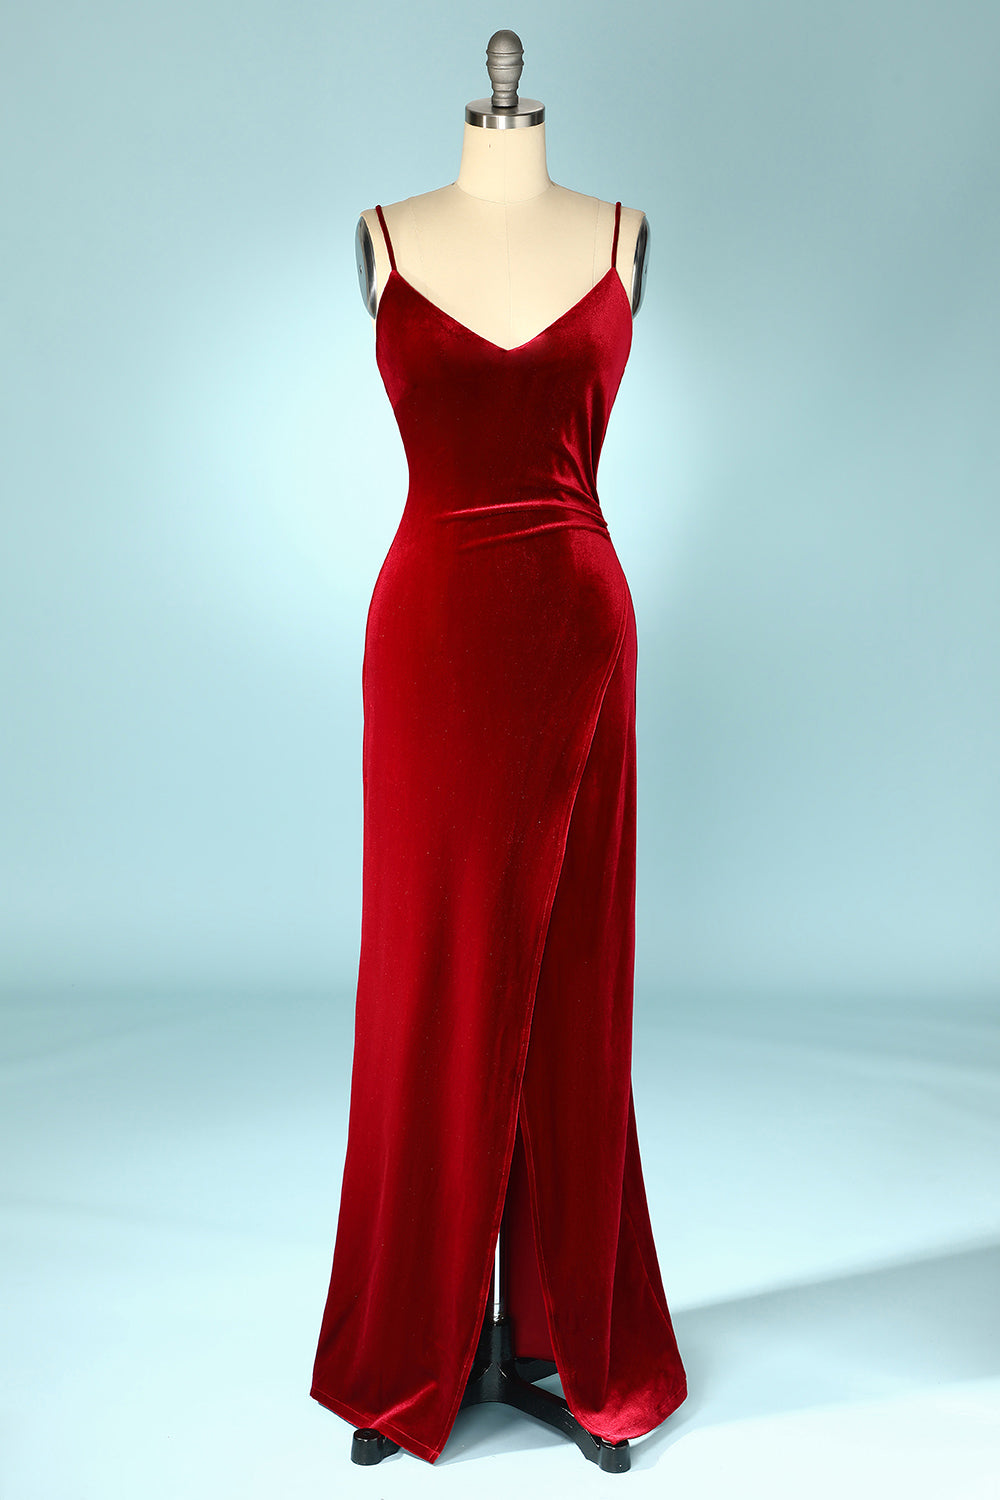 Red Velvet Evening Party Dress